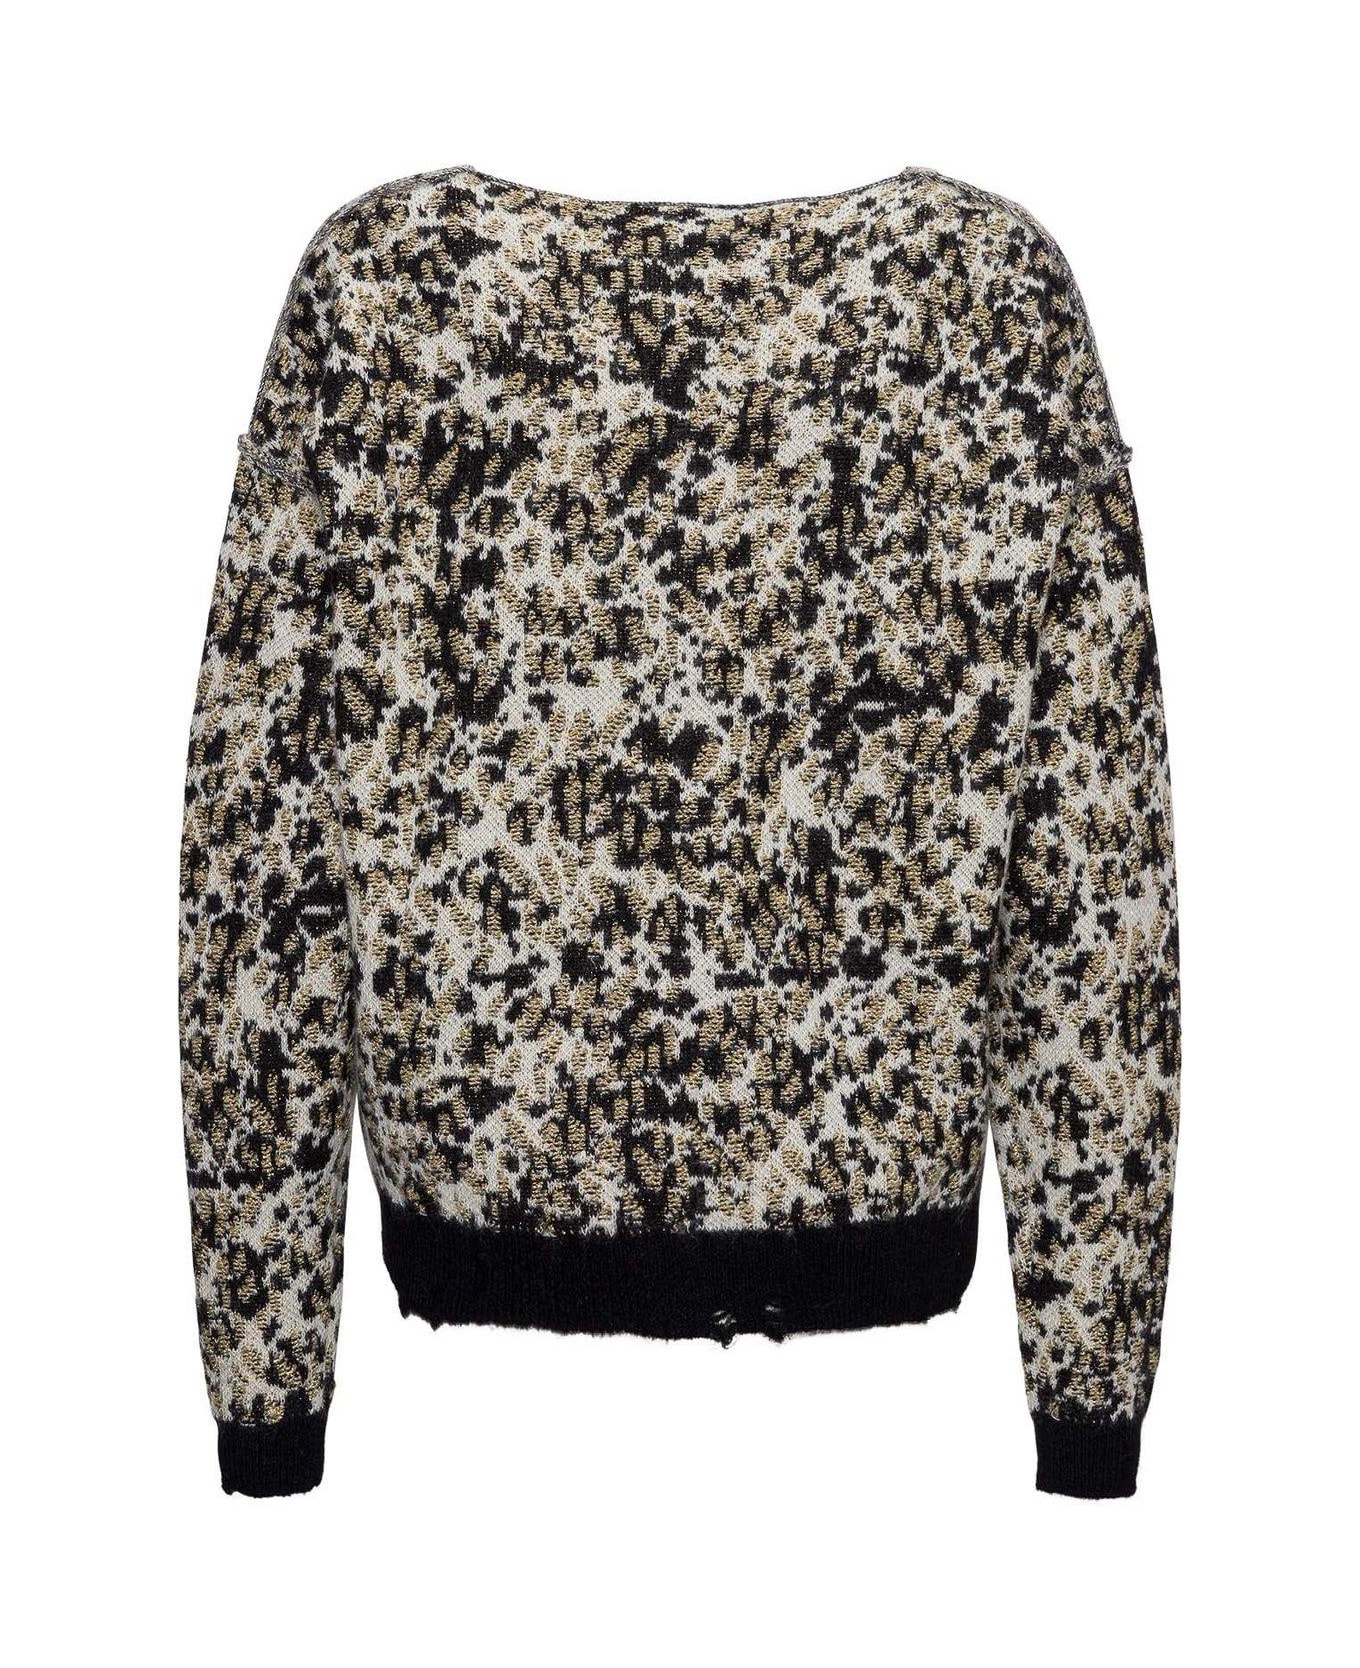 Saint Laurent Leopard Print Knit Sweater - BLACK